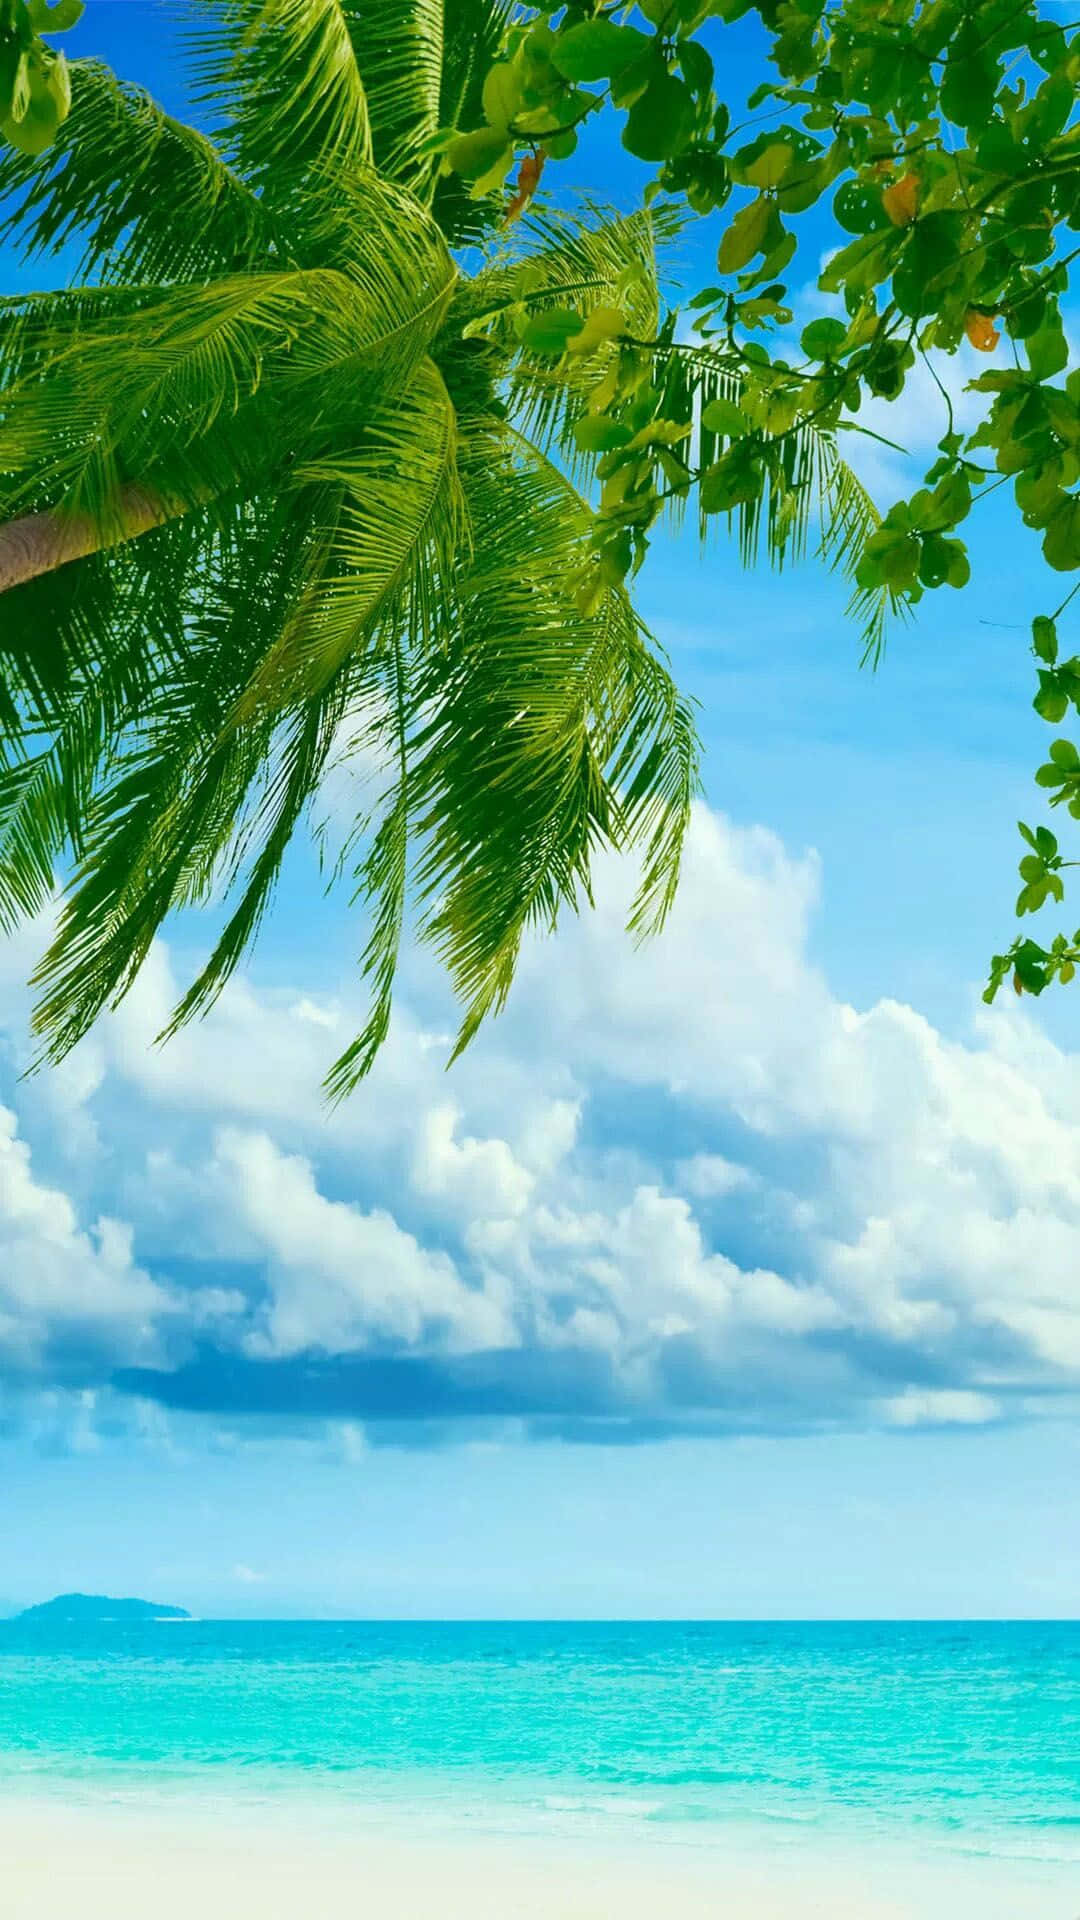 Einenruhigen Tag Am Strand Genießen Und Dabei Den Blick Auf Eine Meereskulisse Mit Palmen Genießen. Wallpaper